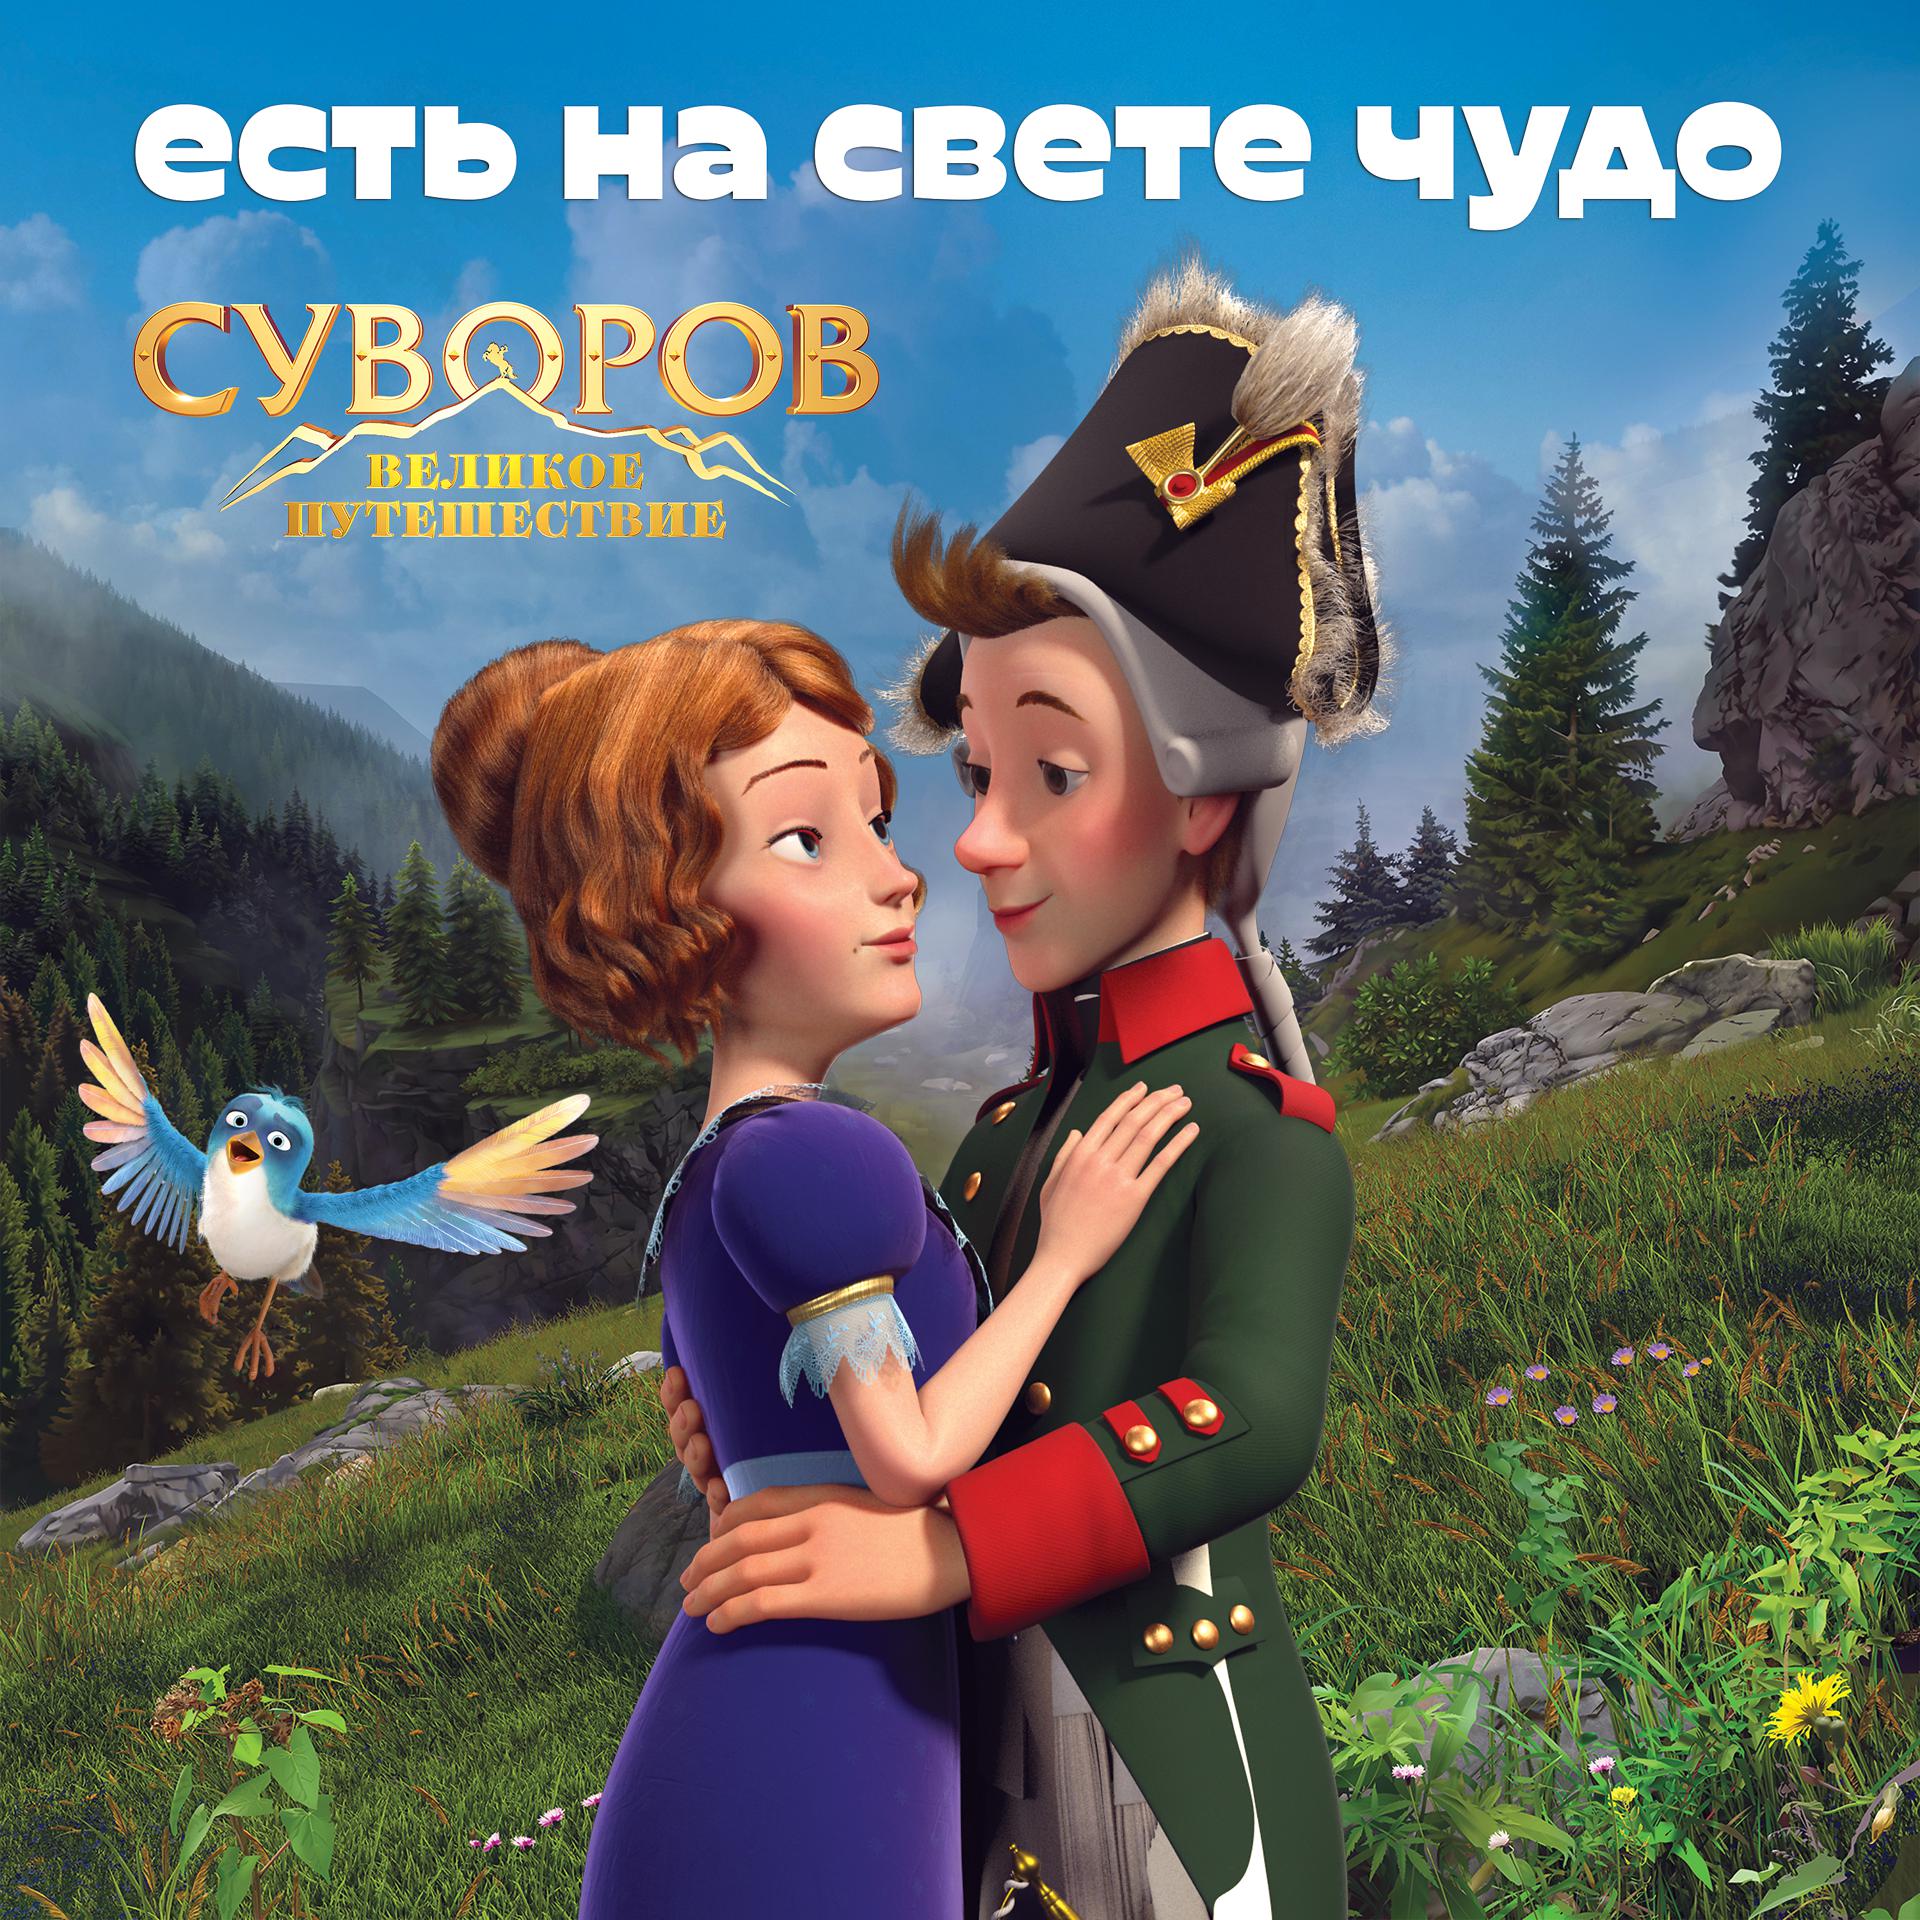 Постер альбома Есть на свете чудо (Из анимационного фильма "Суворов. Великое путешествие")